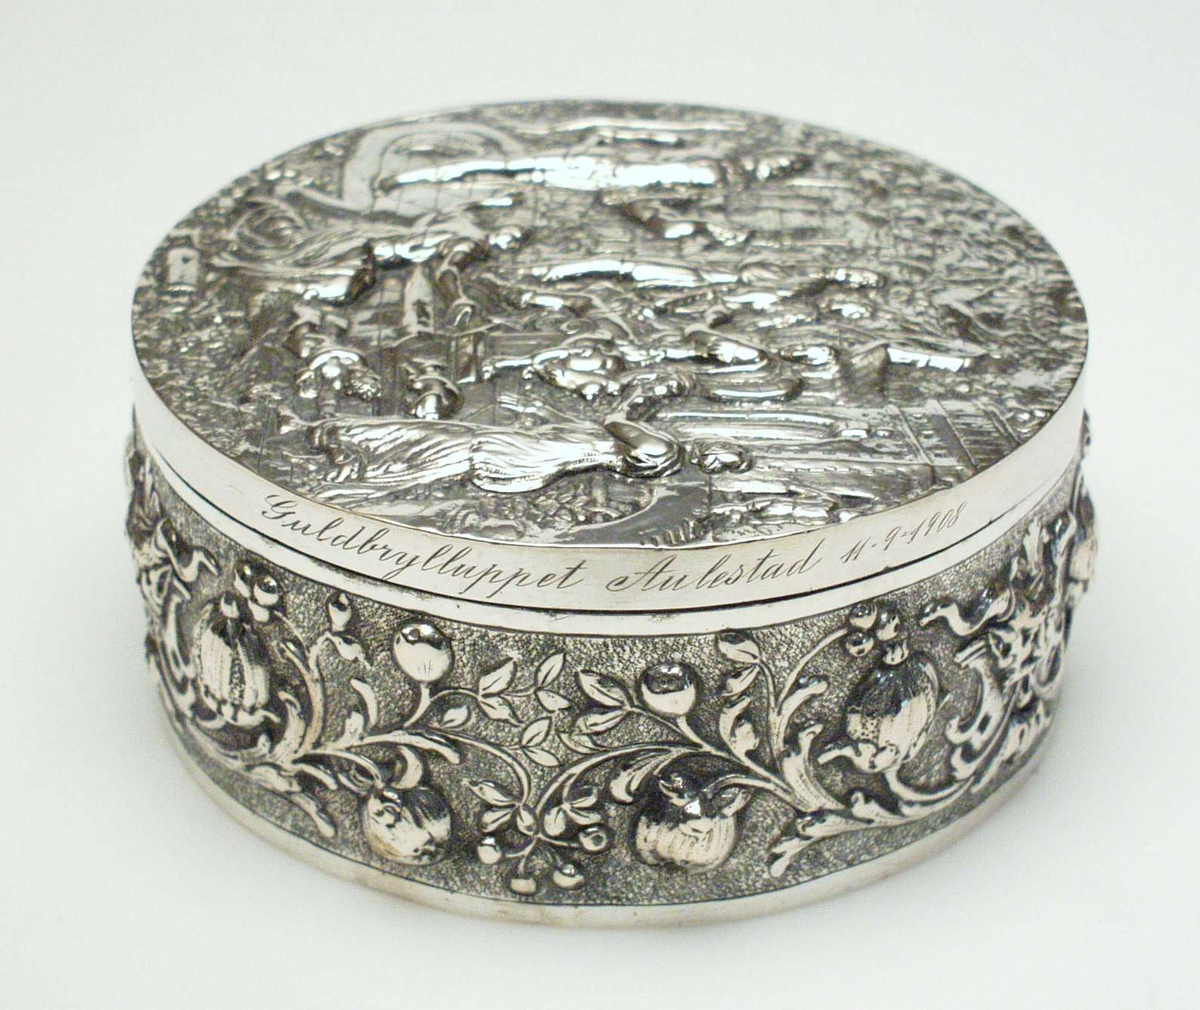 Rundt skrin i sølv med støpt dekor i relieff. På lokket et bibelsk motiv i relieff, på esken et rosemønster